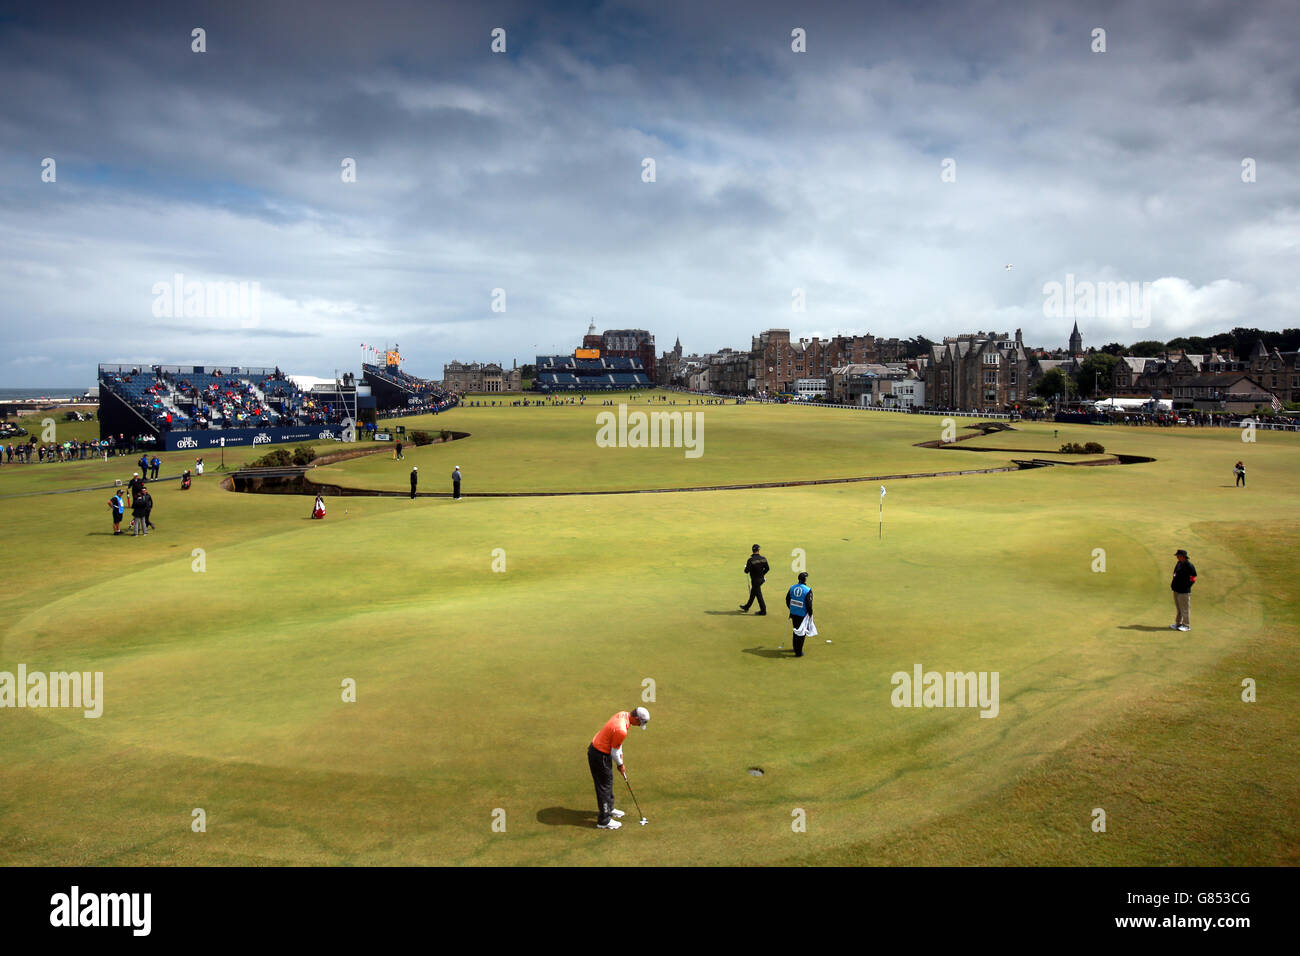 Golf - le championnat ouvert 2015 - quatrième jour de pratique - St Andrews.Une vue générale du jeu lors d'une journée d'entraînement avant le Championnat ouvert 2015 à St Andrews, Fife. Banque D'Images